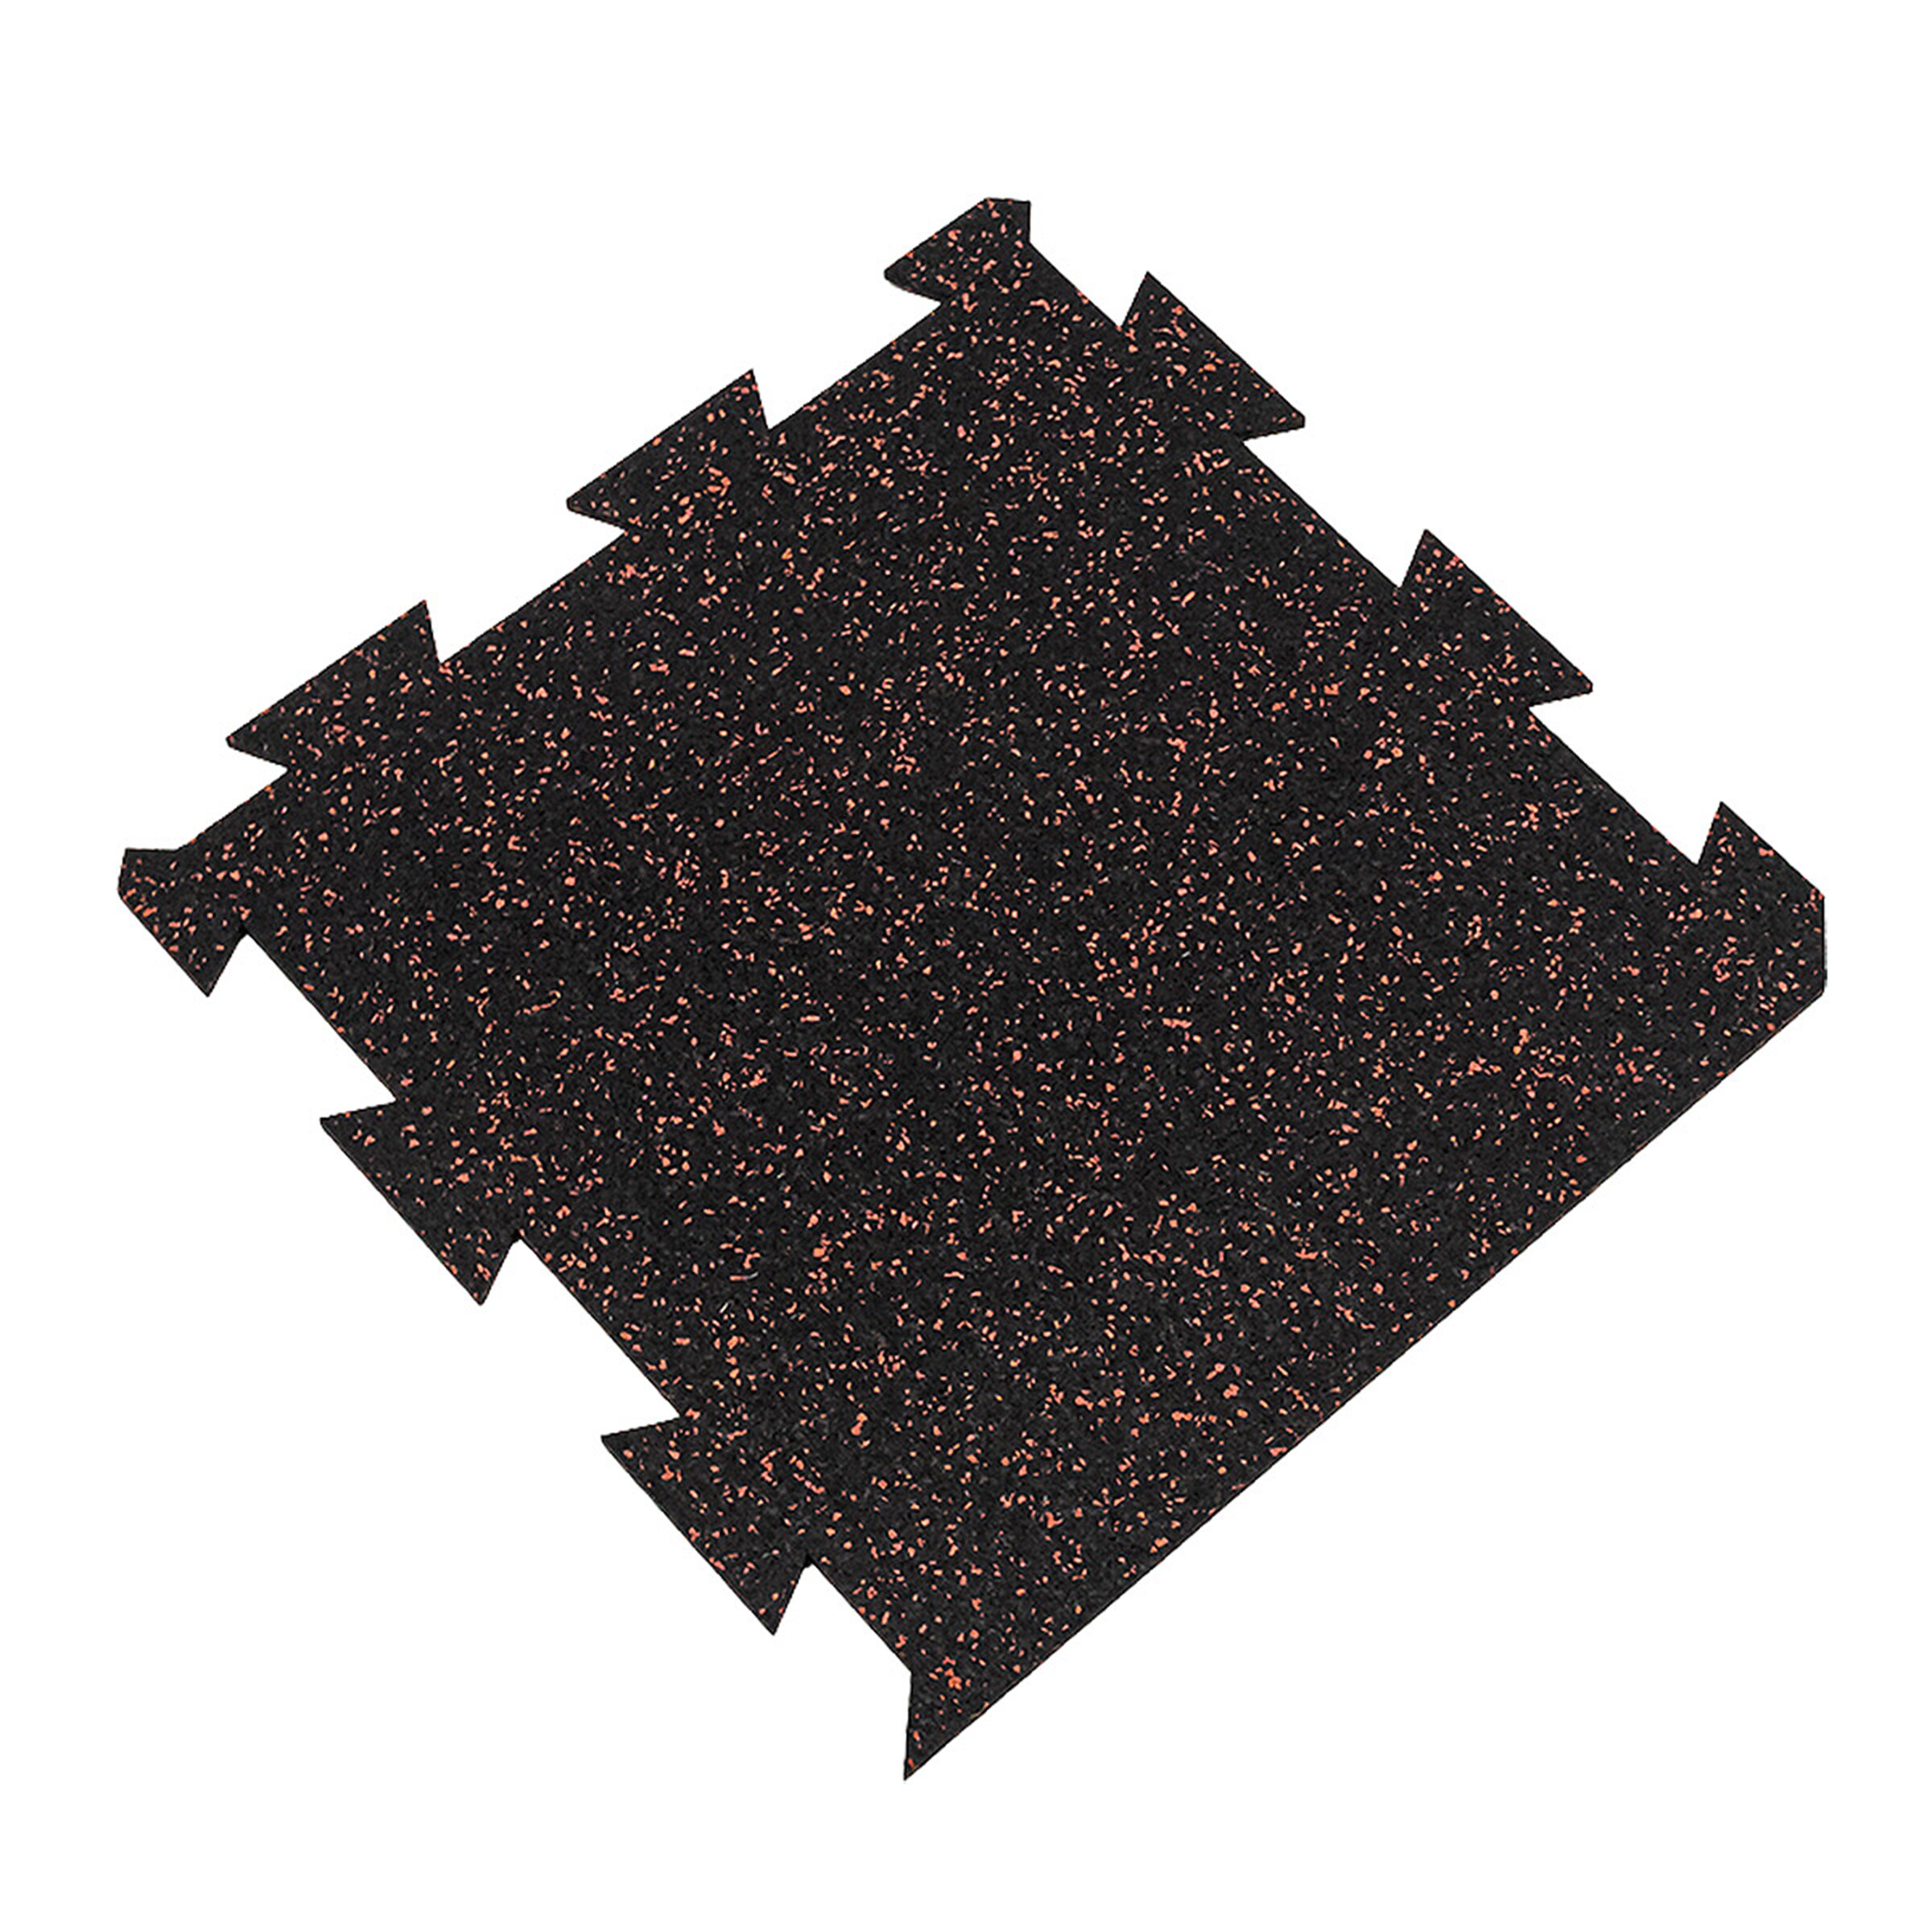 Černo-červená gumová modulová puzzle dlažba (okraj) FLOMA FitFlo SF1050 - délka 50 cm, šířka 50 cm, výška 1 cm